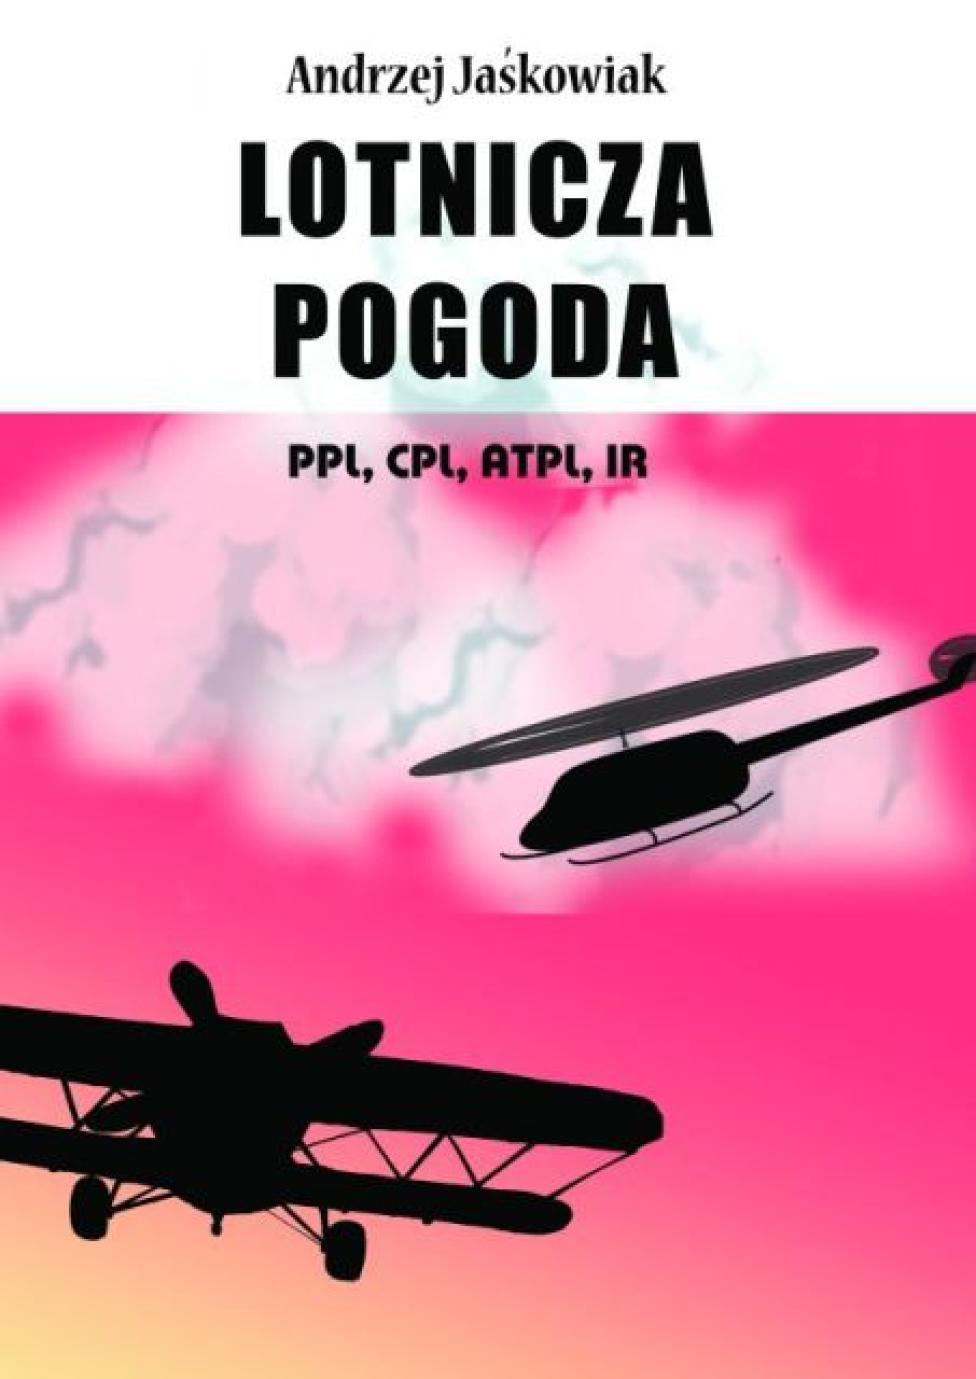 Andrzej Jaśkowiak, "Lotnicza pogoda. Meteorologia dla pilotów."